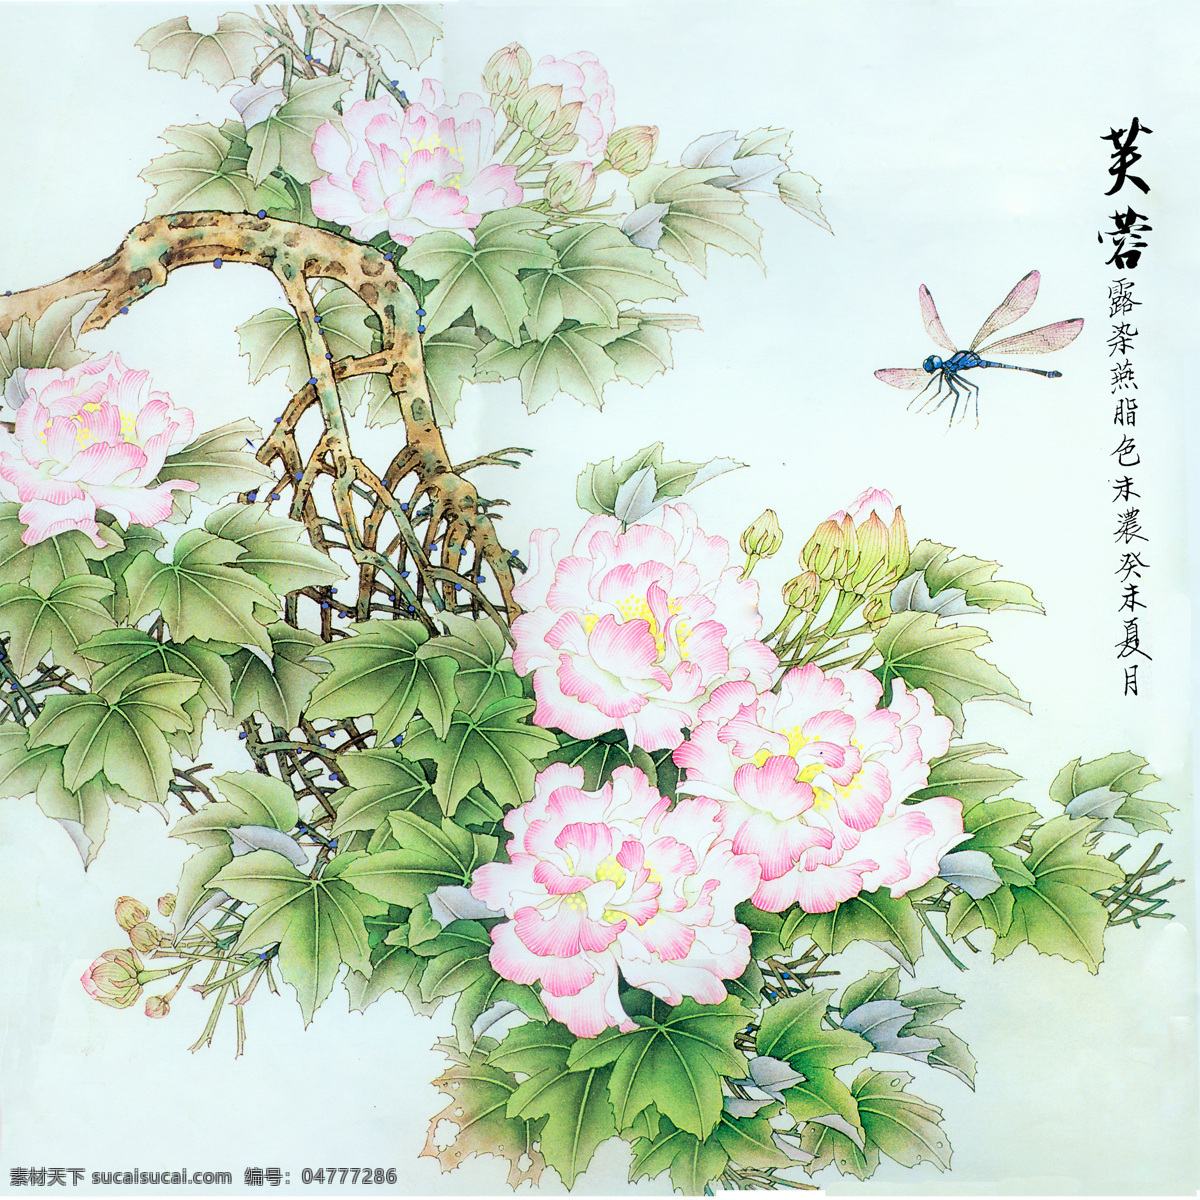 芙蓉 蜻蜓 国画 绘画 工笔 绘画书法 文化艺术